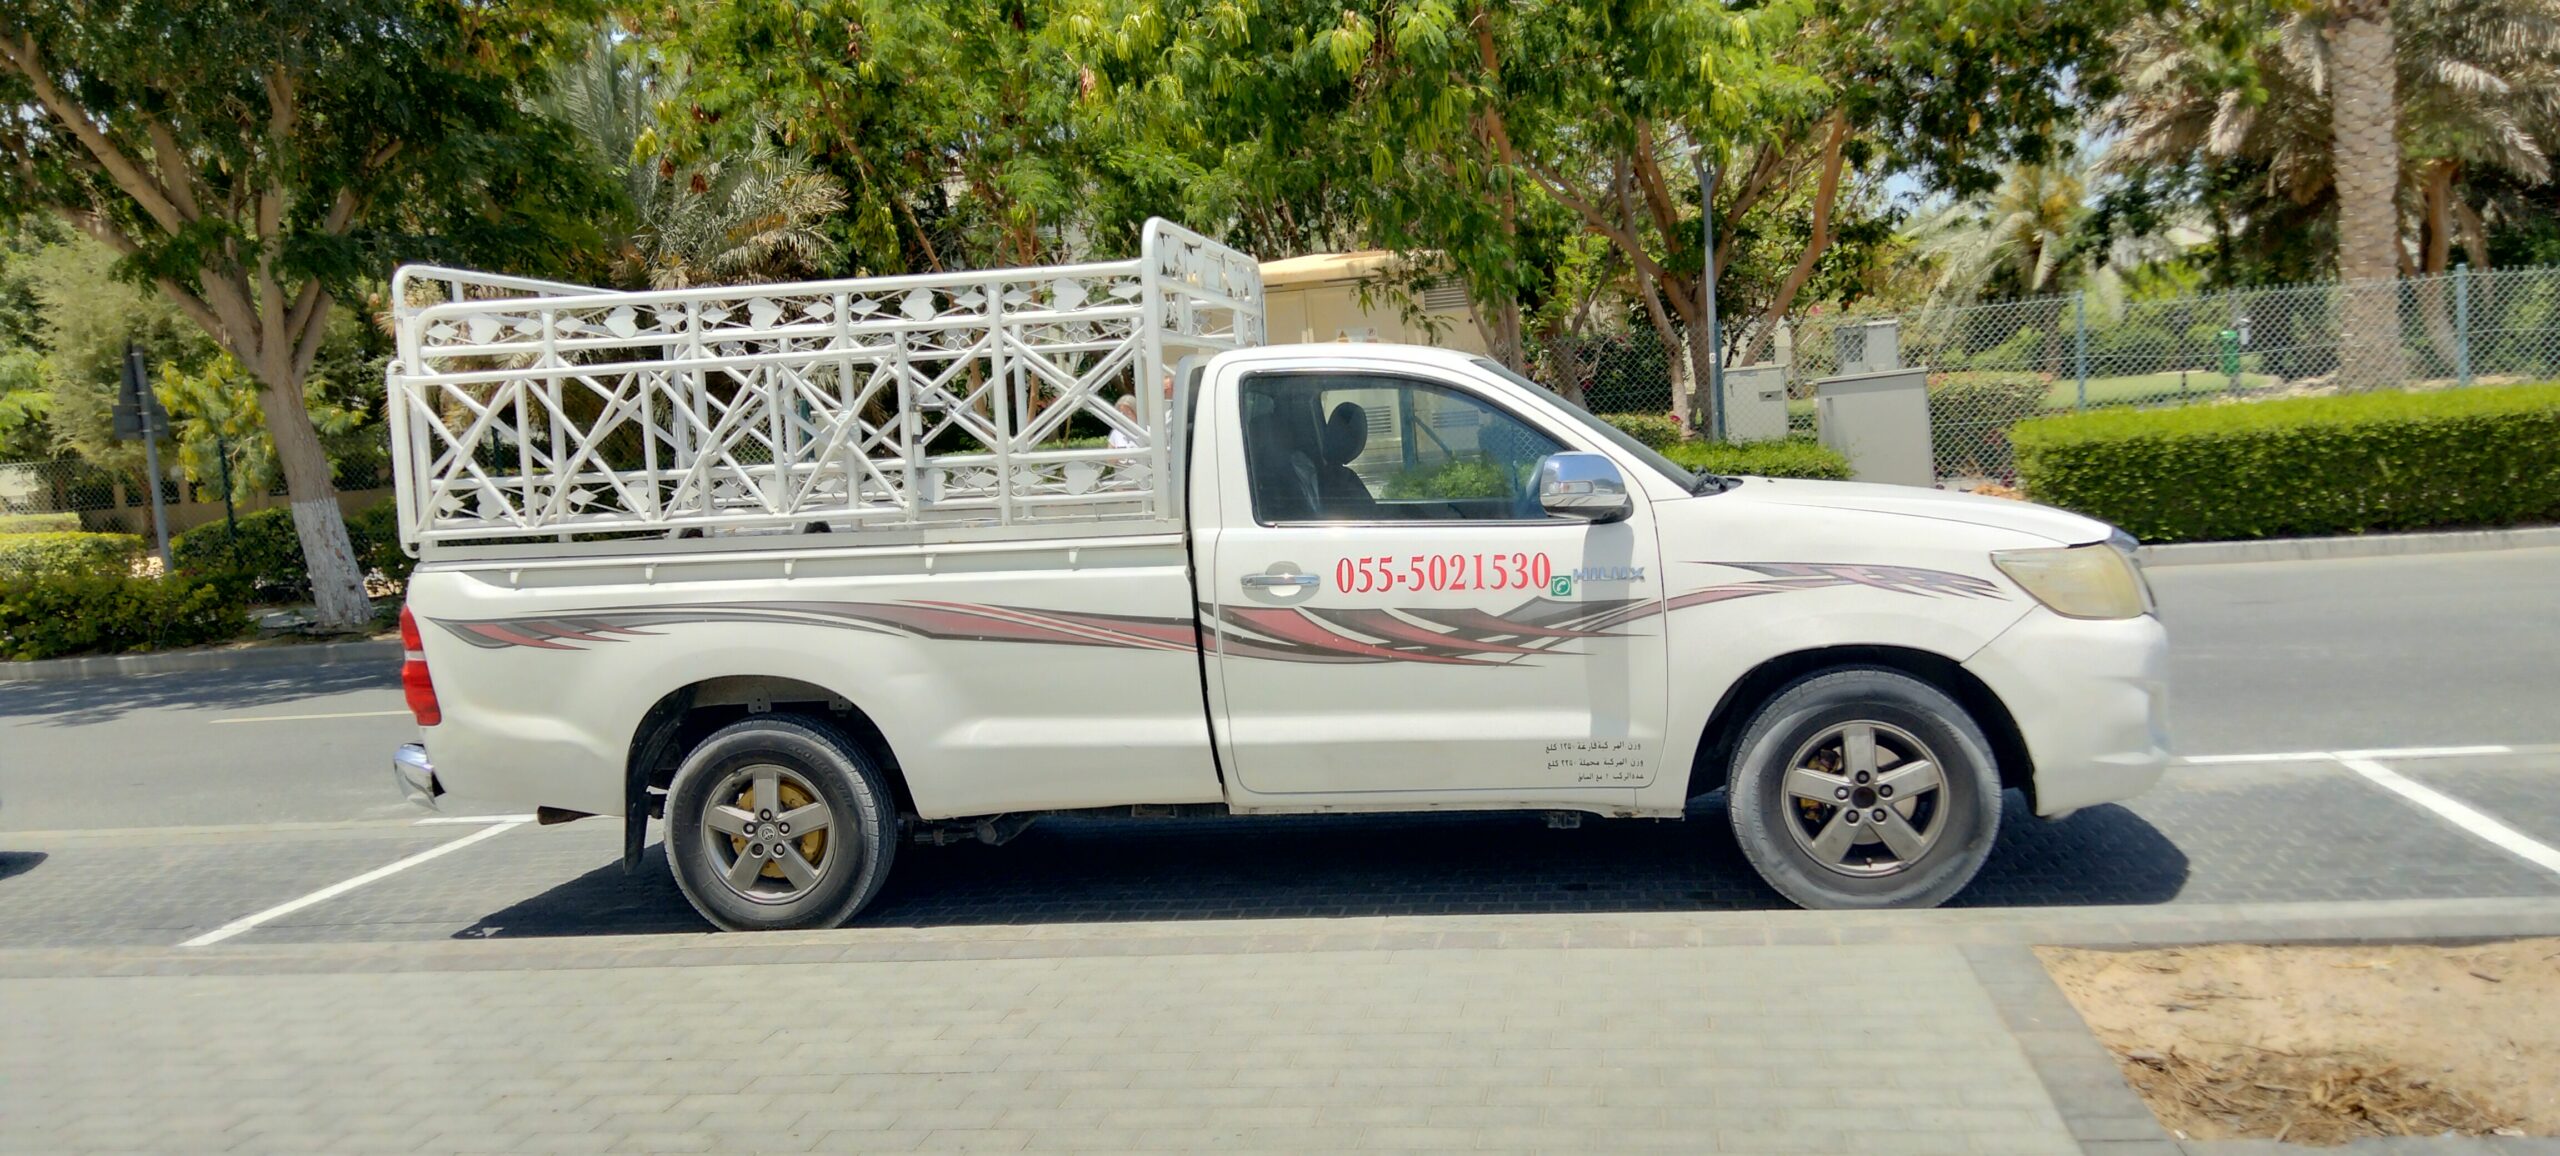 Fast delivery service in Dubai UAE